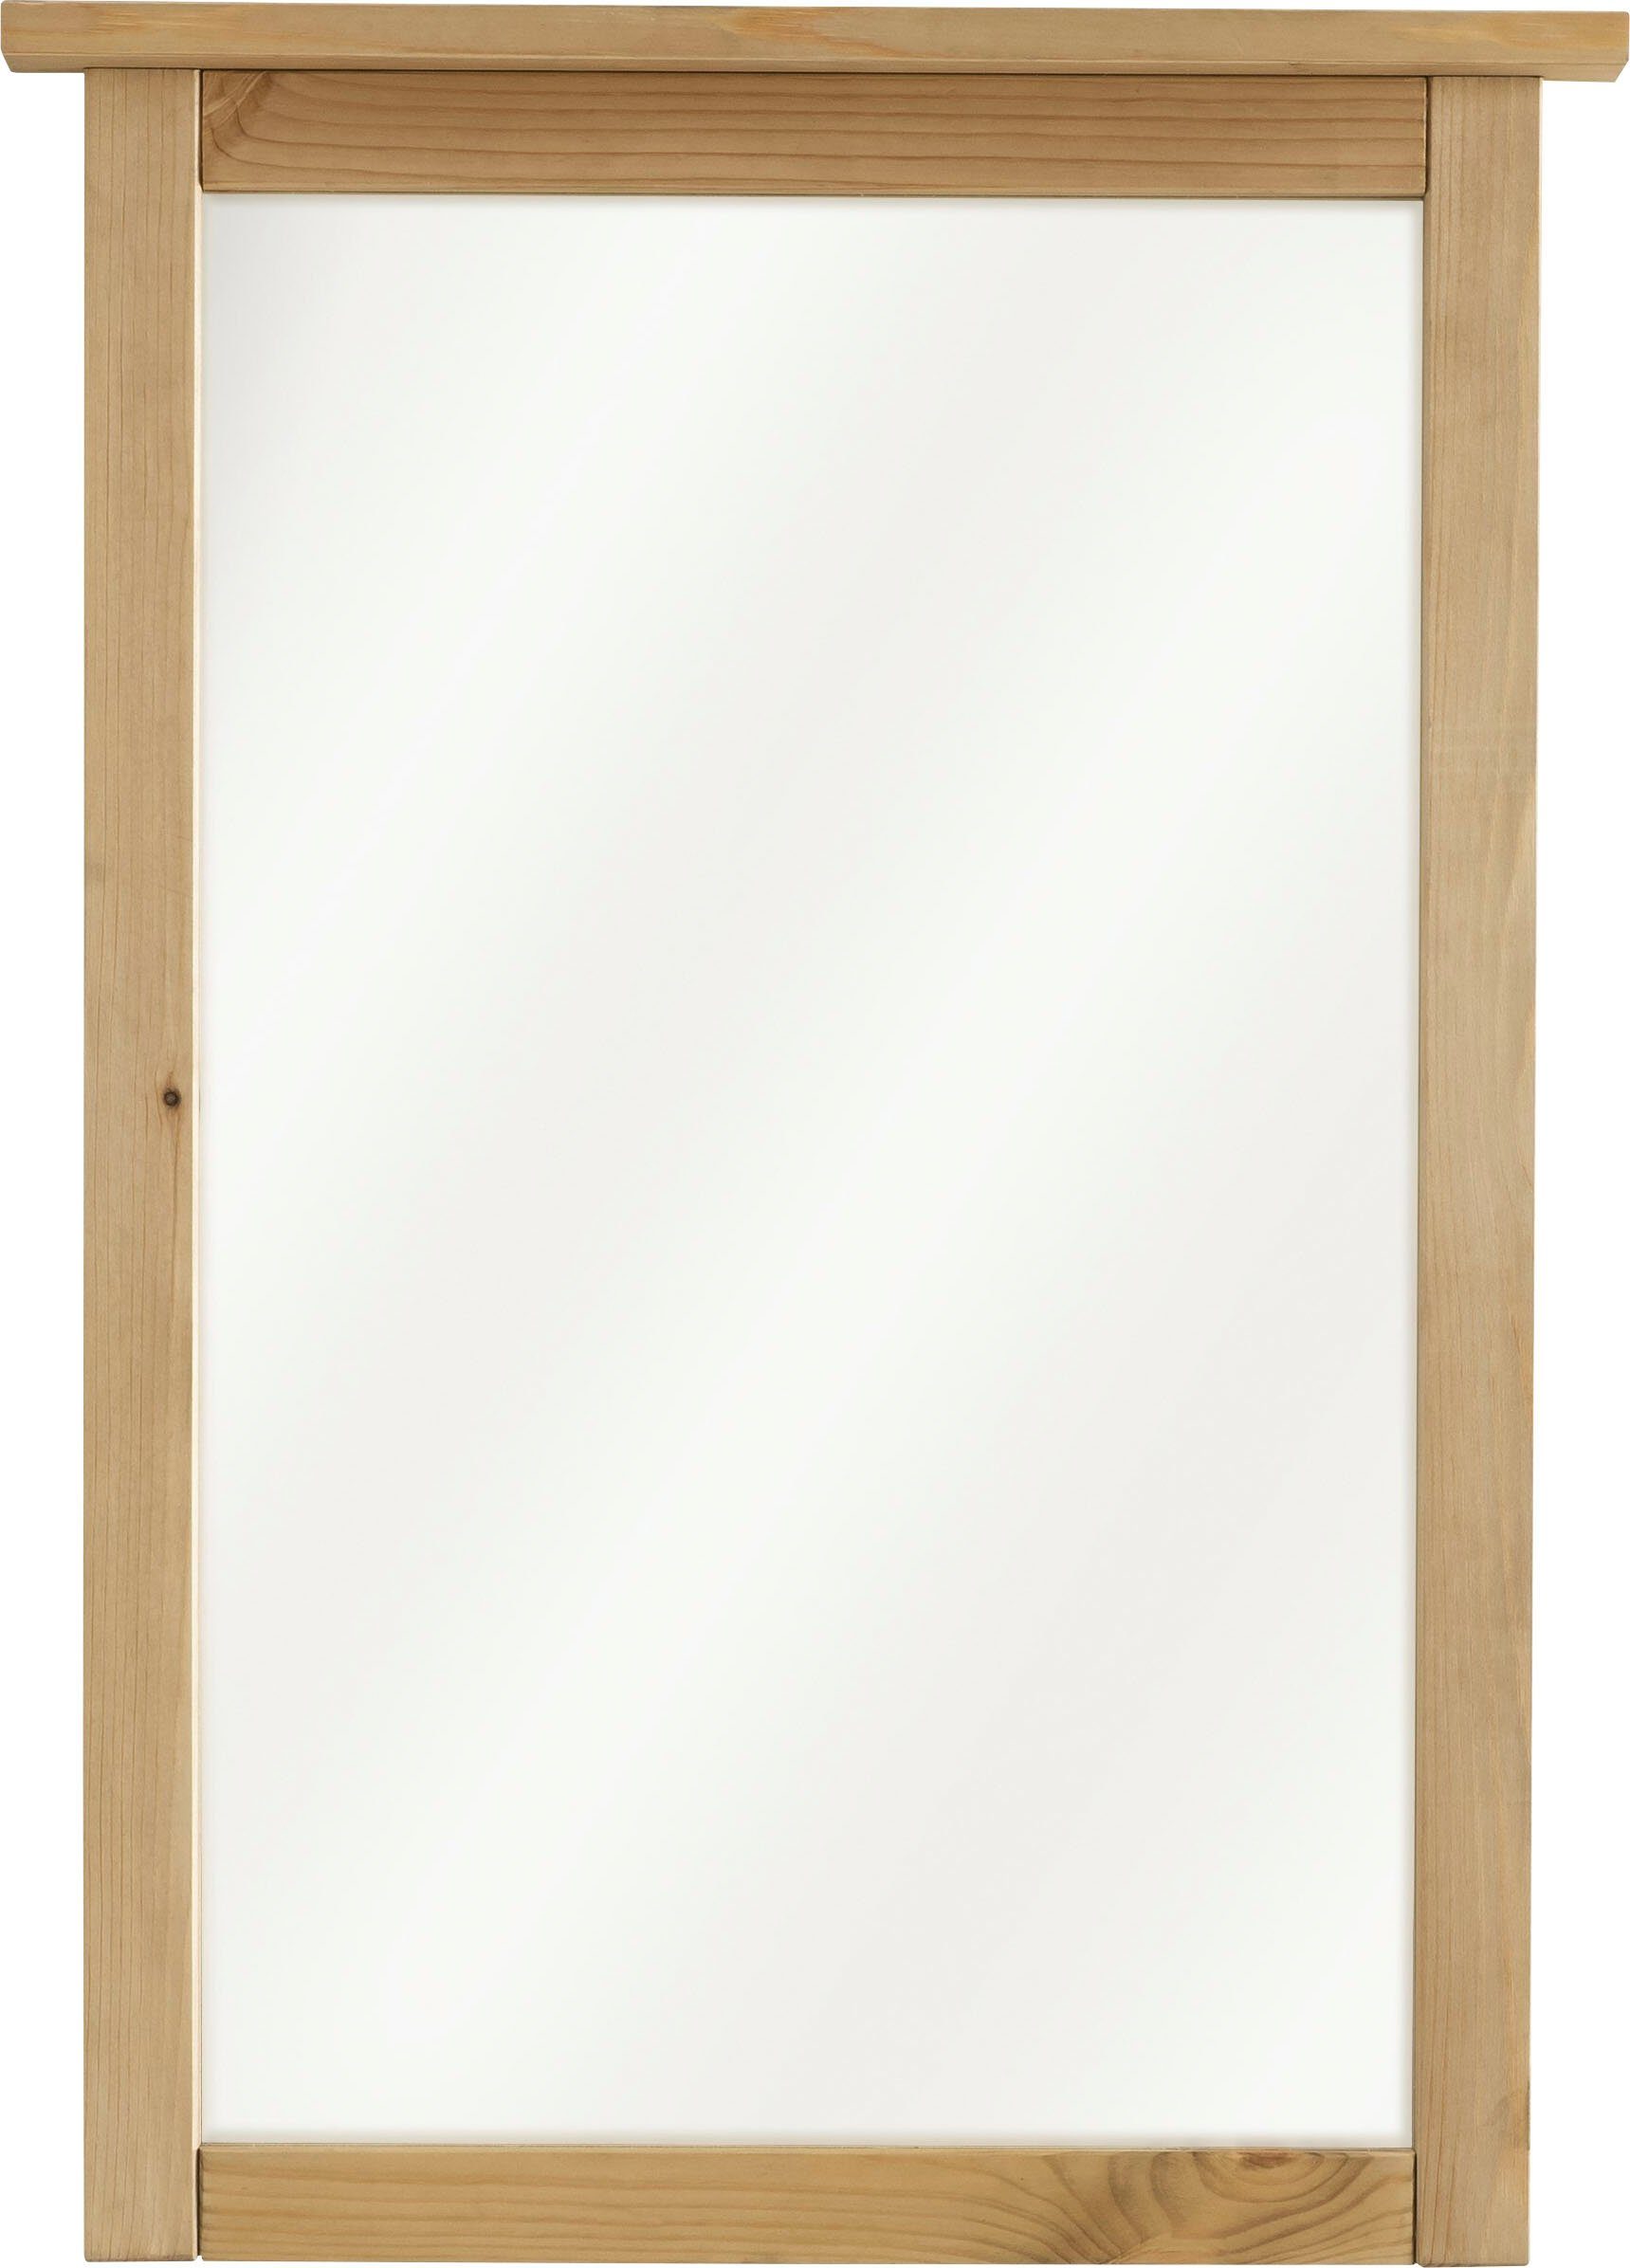 massiv, geölt Infantil Solvita, Wandspiegel Gebeizt Landhaus Breite 58 cm, by Kiefer Wohn[glück]lich Wandspiegel, Spiegel,